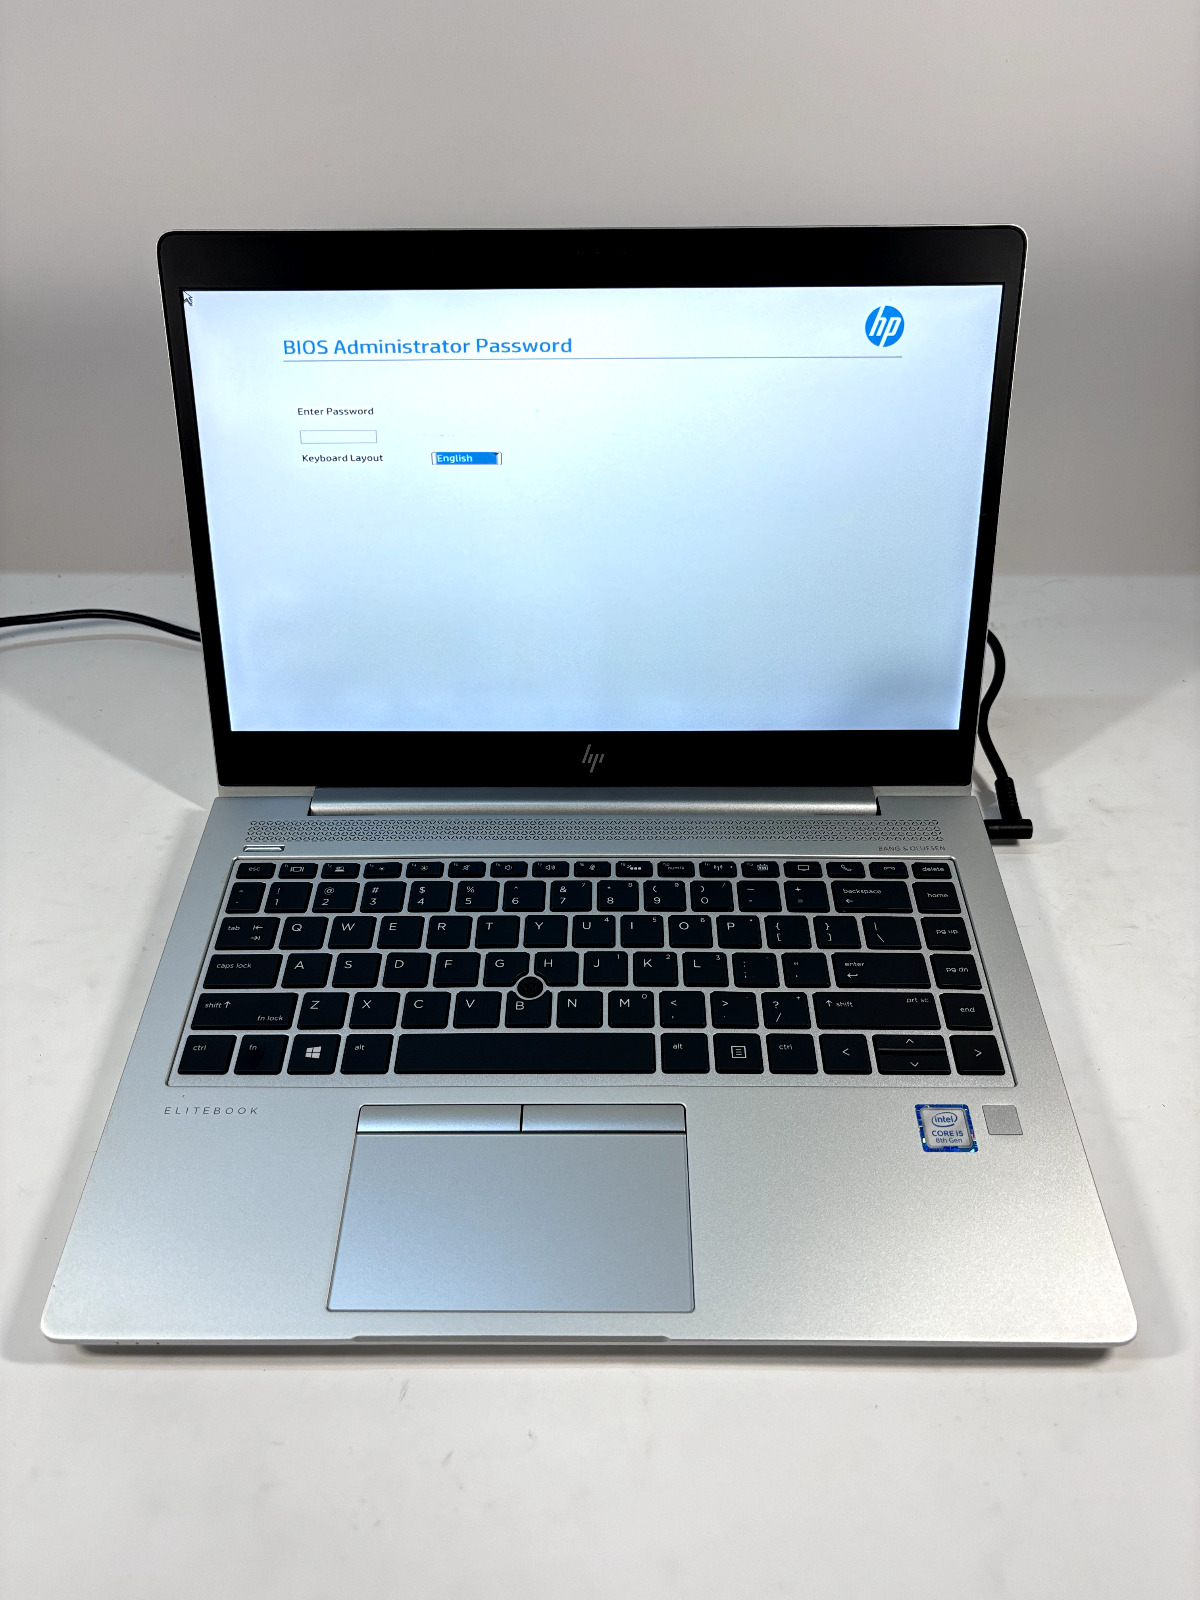 HP EliteBook 840 G5 i5 8250U@1.60GHz 16GB No HDD/OS/Battery - Bios Locked